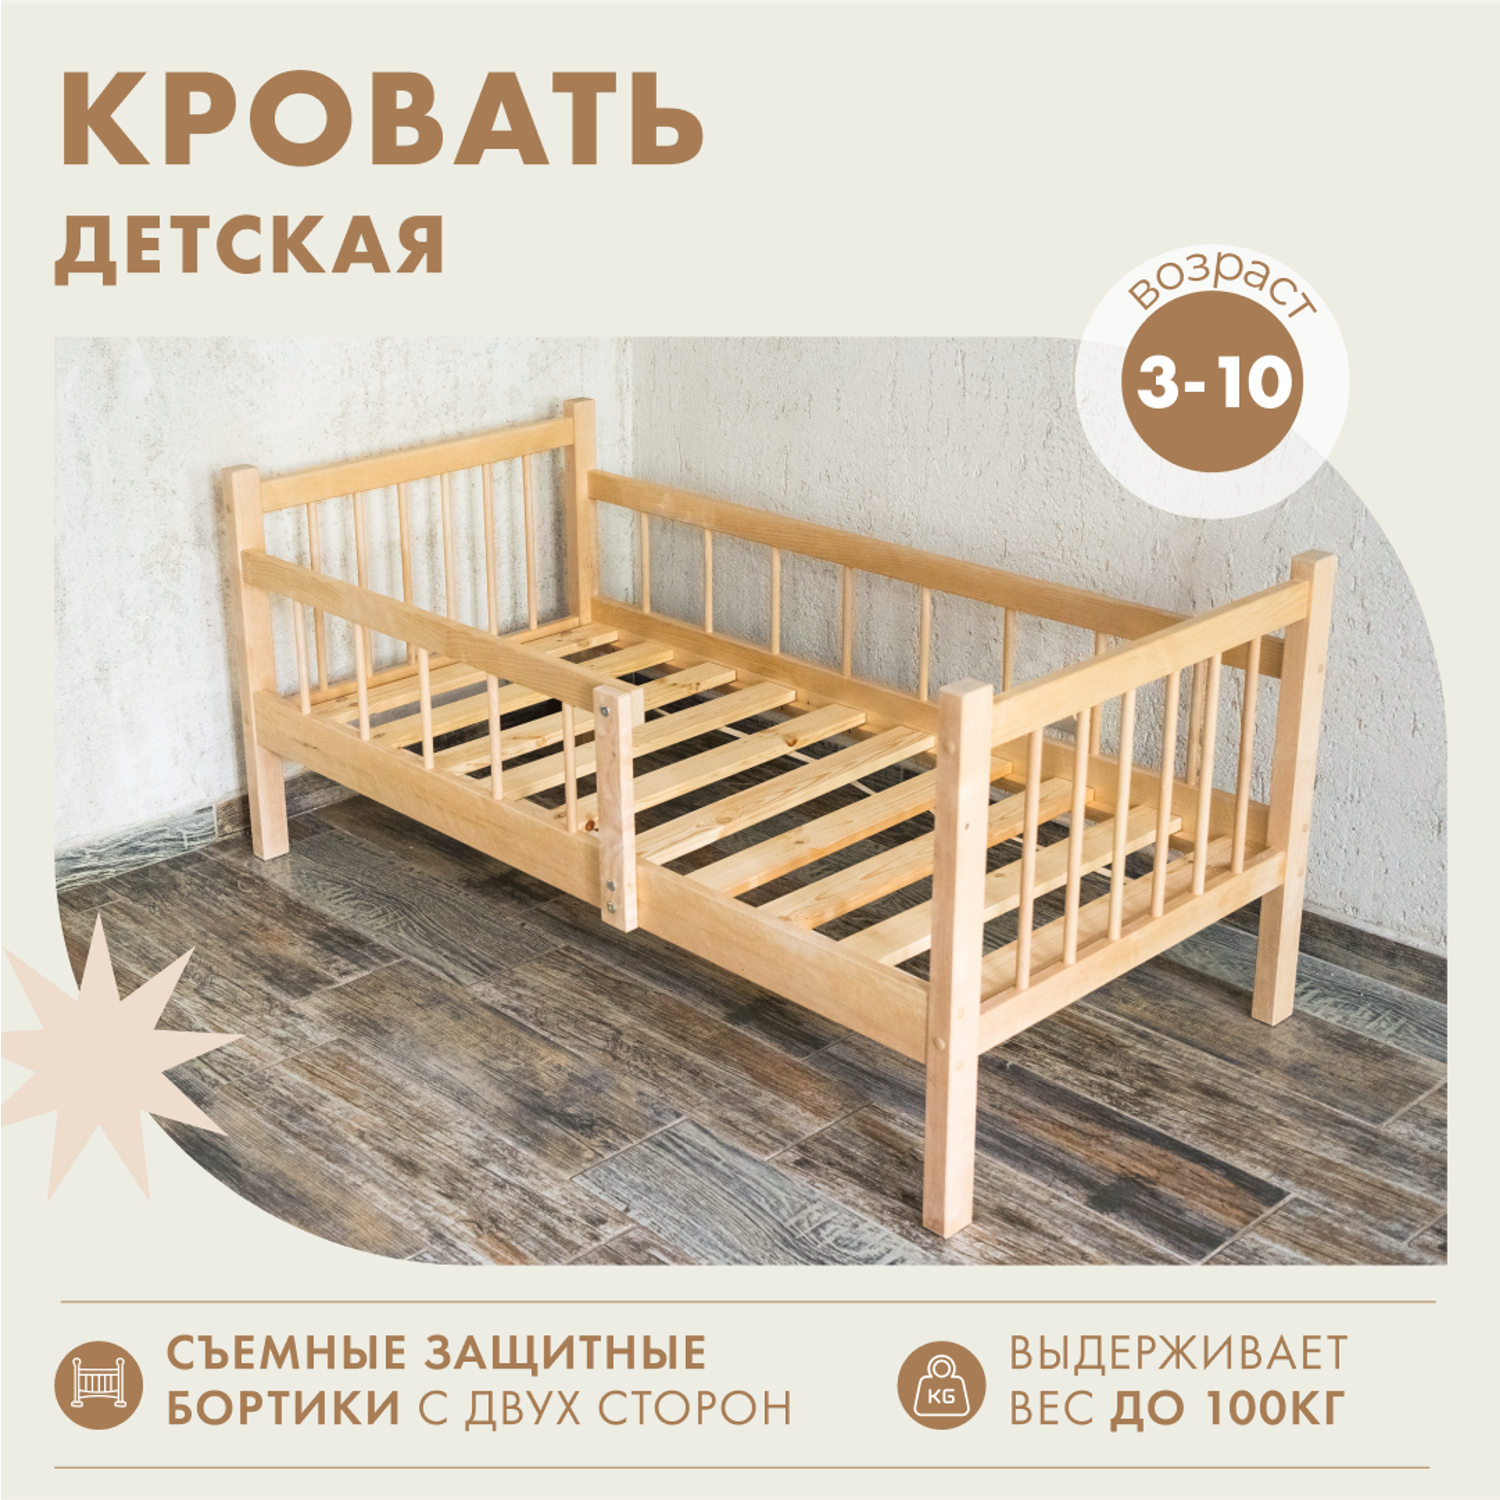 Кровать софа детская Alatoys деревянная 140*70 см с бортиками - фото 1